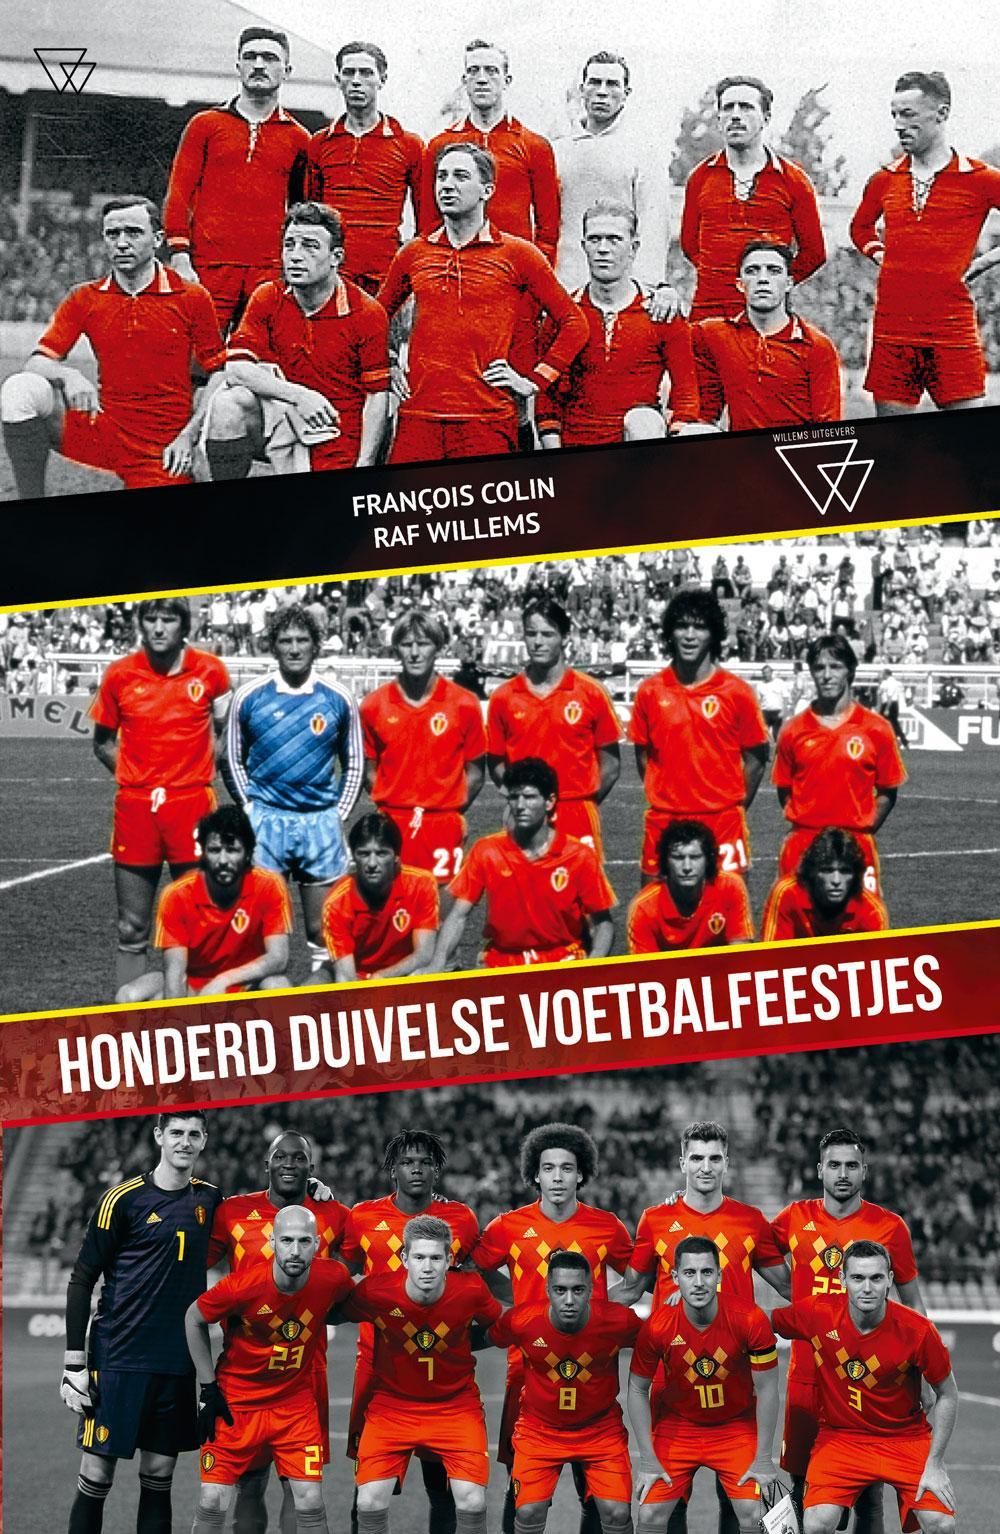 'Honderd duivelse voetbalfeestjes', François Colin & Raf Willems, Uitgeverij 'De witte duivel', 226 p., ?20